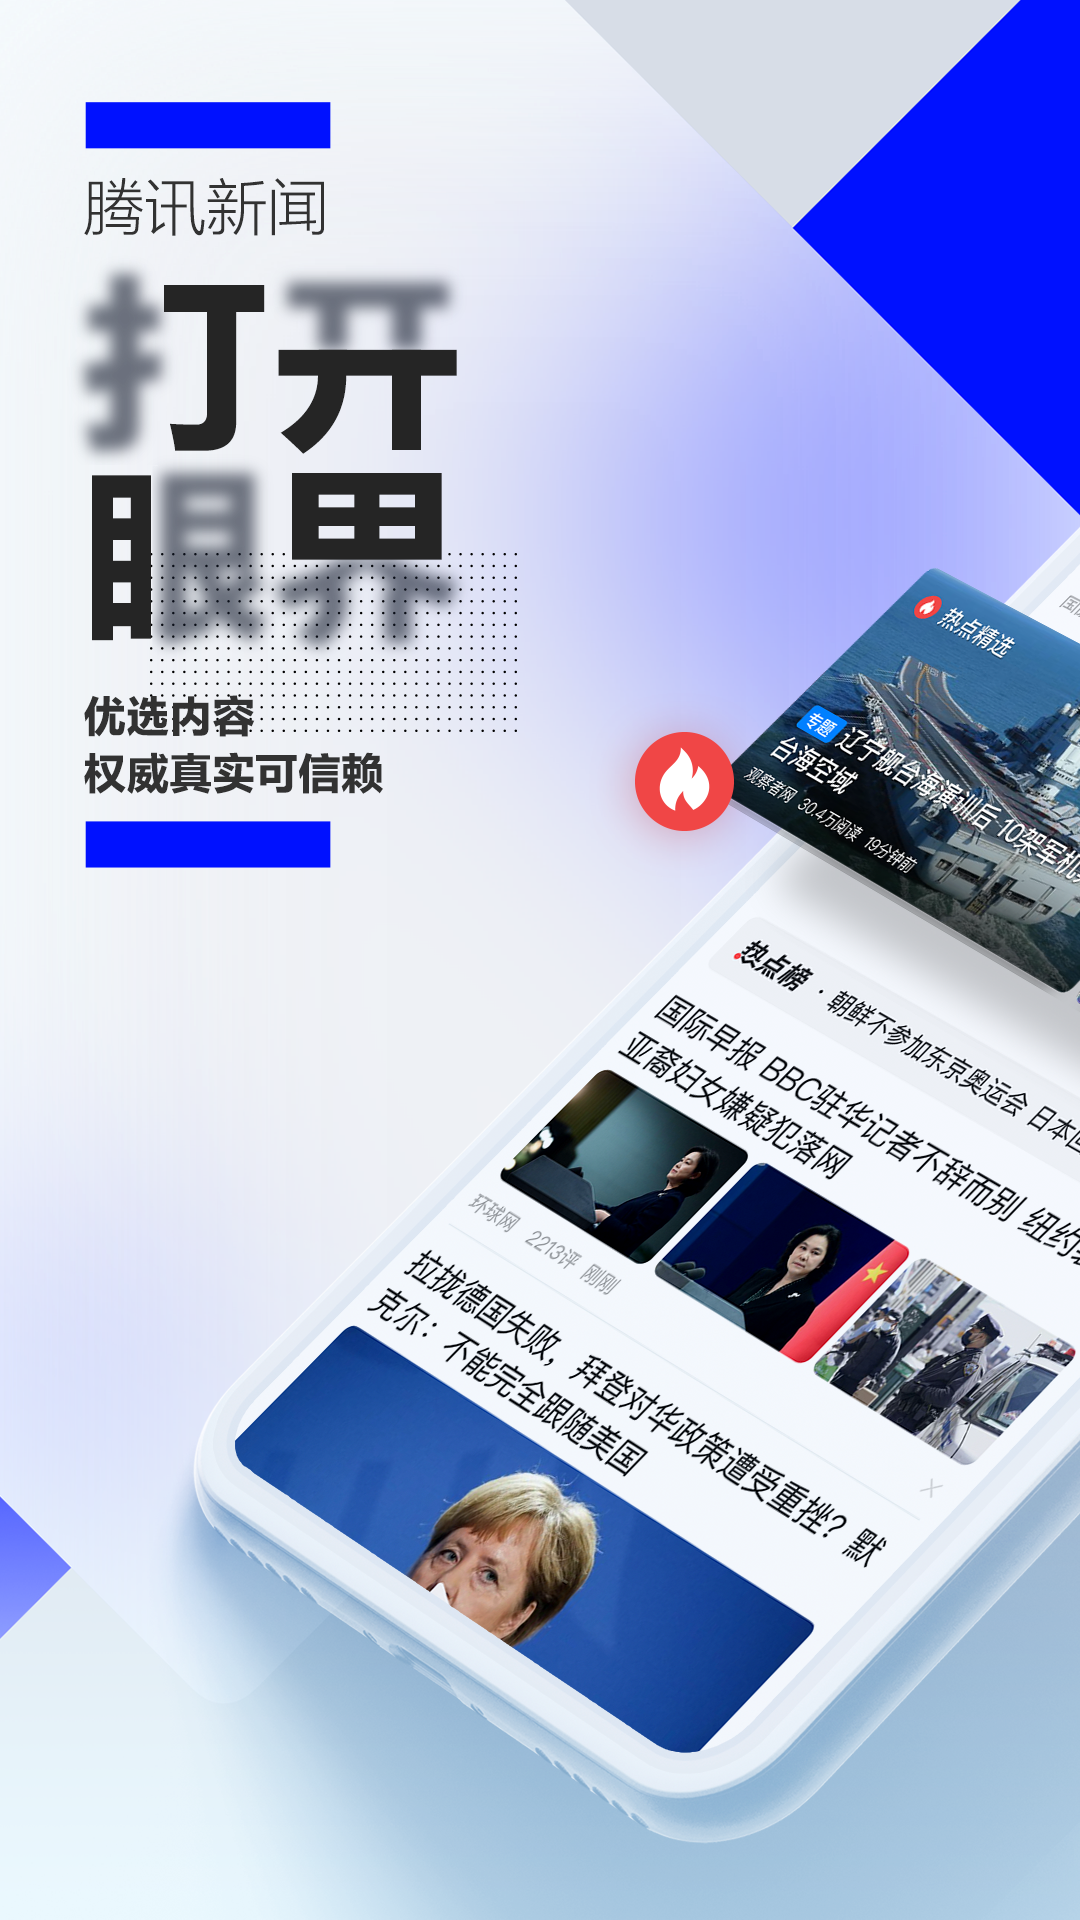 腾讯新闻app下载安装免费下载手机版最新版本